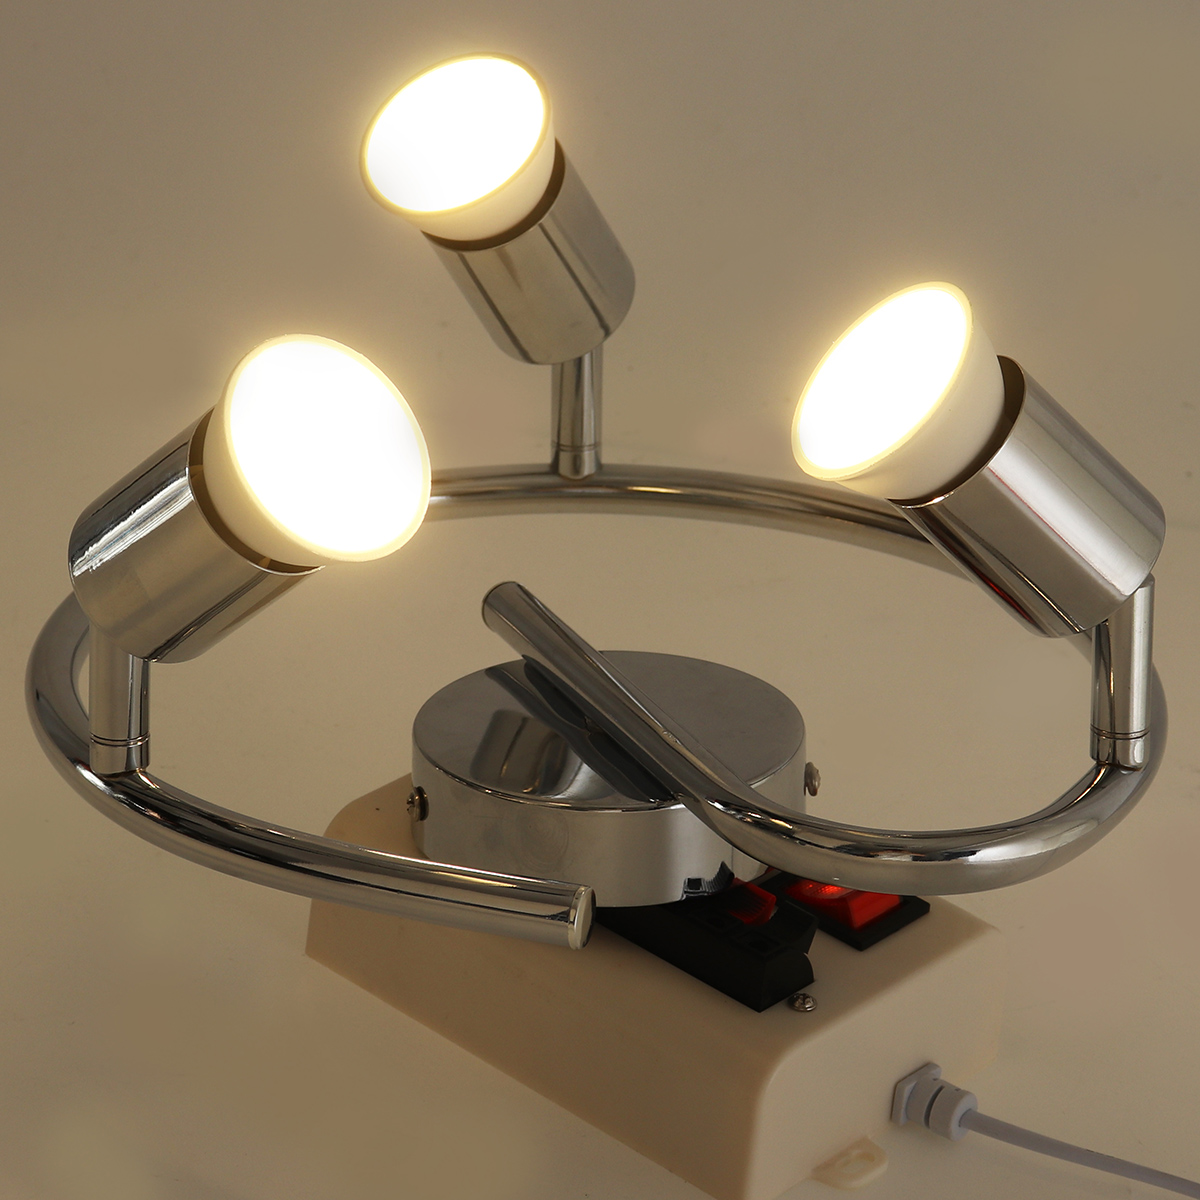 3-Heads-GU10-LED-Downlight-Ceiling-Light-Adjustable-Spotlight-Home-Office-Wall-Lamp-85-265V-1732652-3